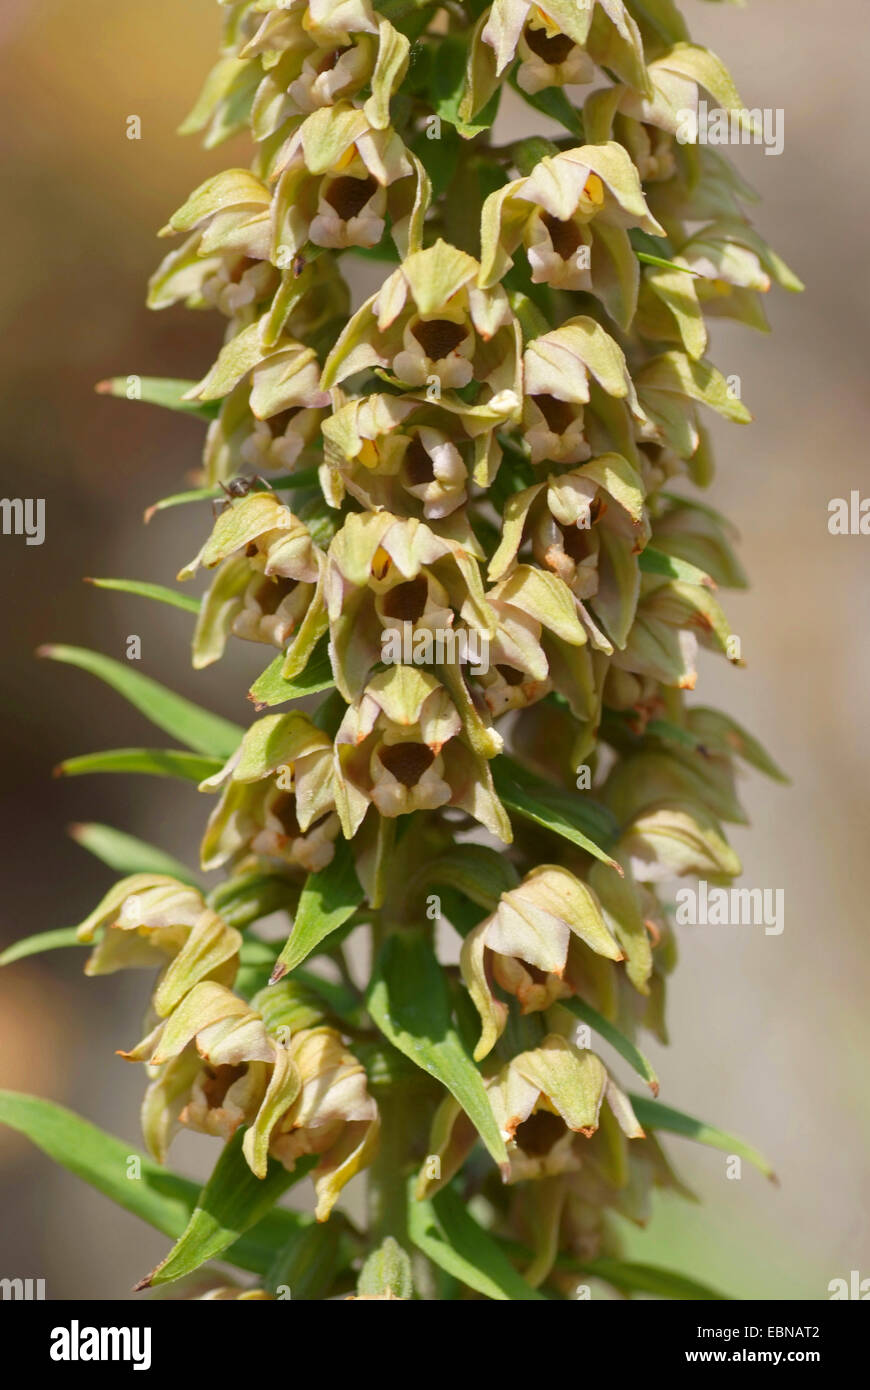 Broad-leaved helleborine, Eastern helleborine (Epipactis helleborine), flowers, Germany Stock Photo